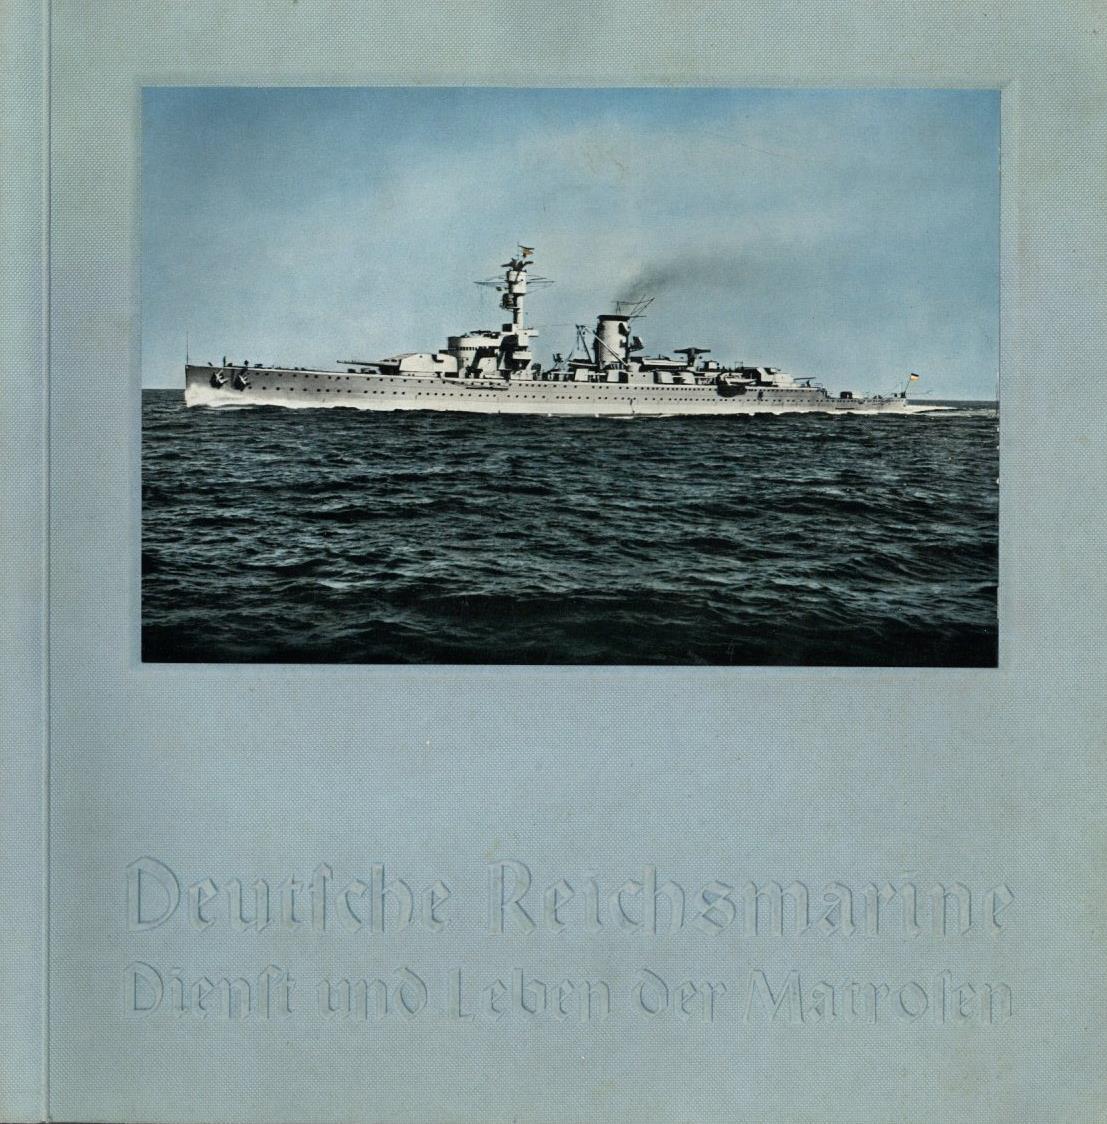 Sammelbild-Album Deutsche Reichsmarine Dienst Und Leben Der Matrosen Max Burchartz 1934 Kompl. II - Guerra 1939-45